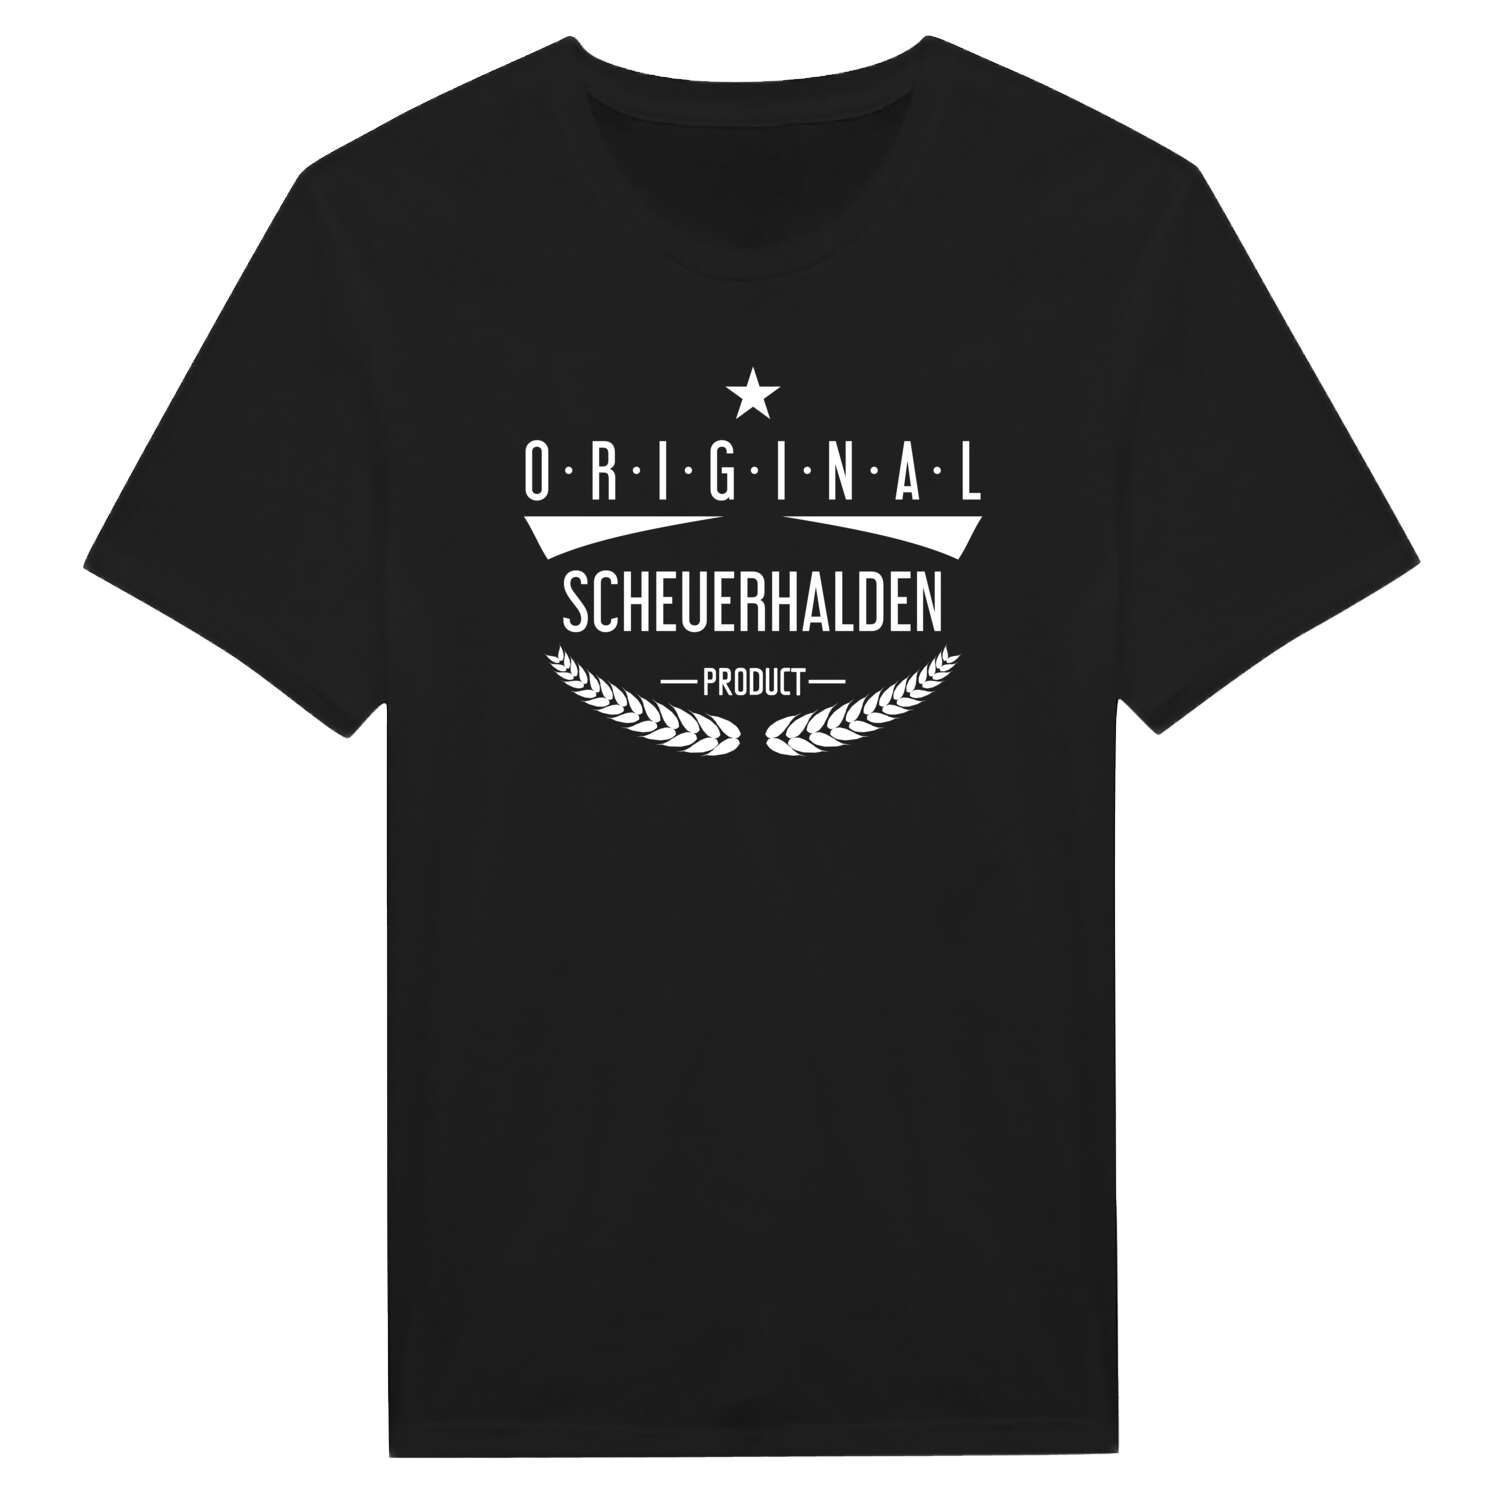 Scheuerhalden T-Shirt »Original Product«